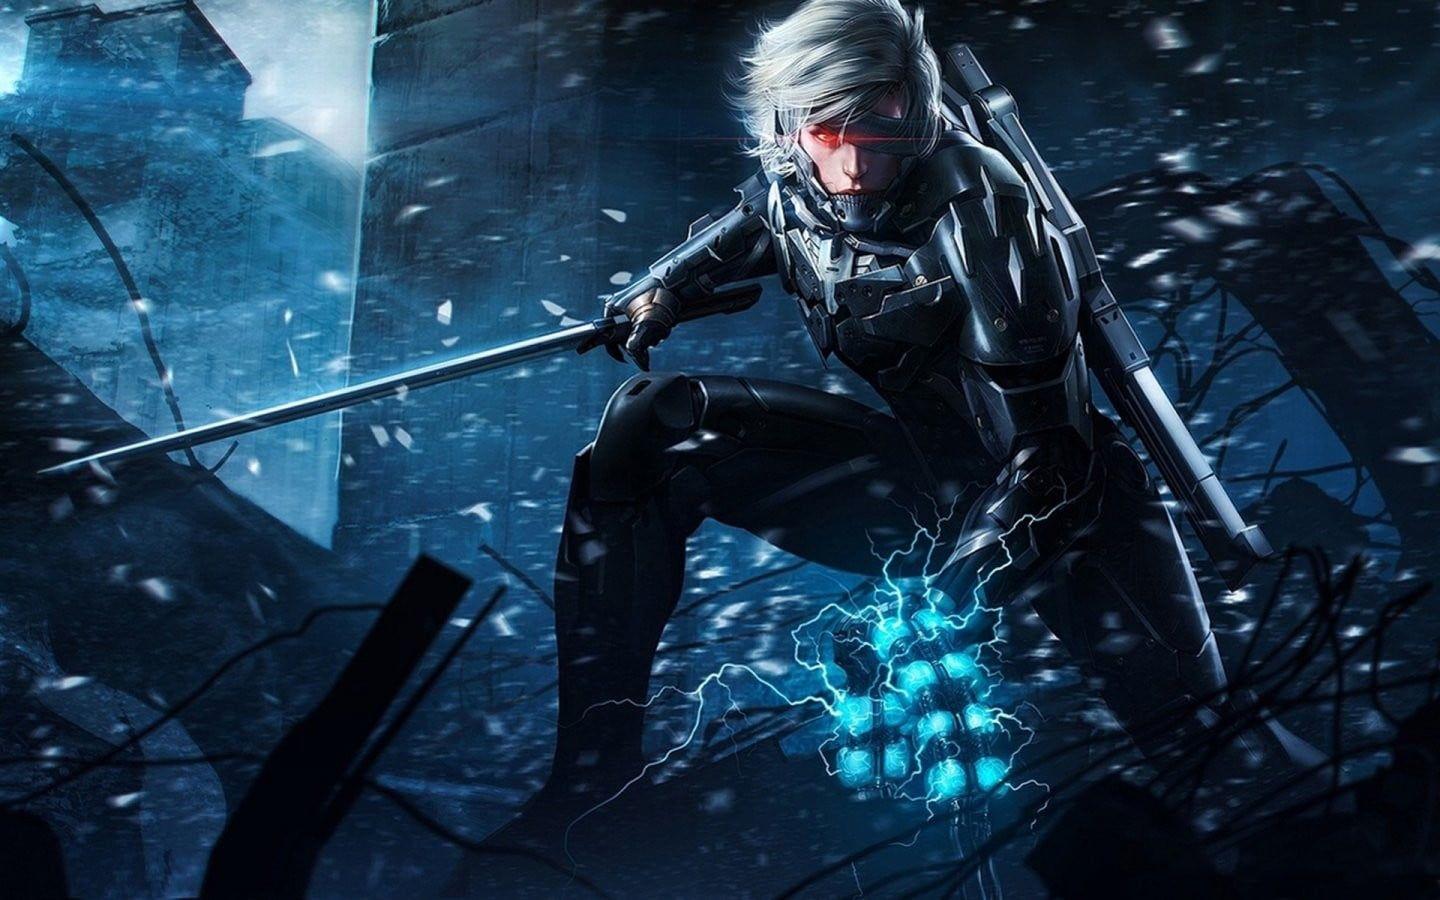 Man in black coat holding sword poster, Raiden, Metal Gear Solid